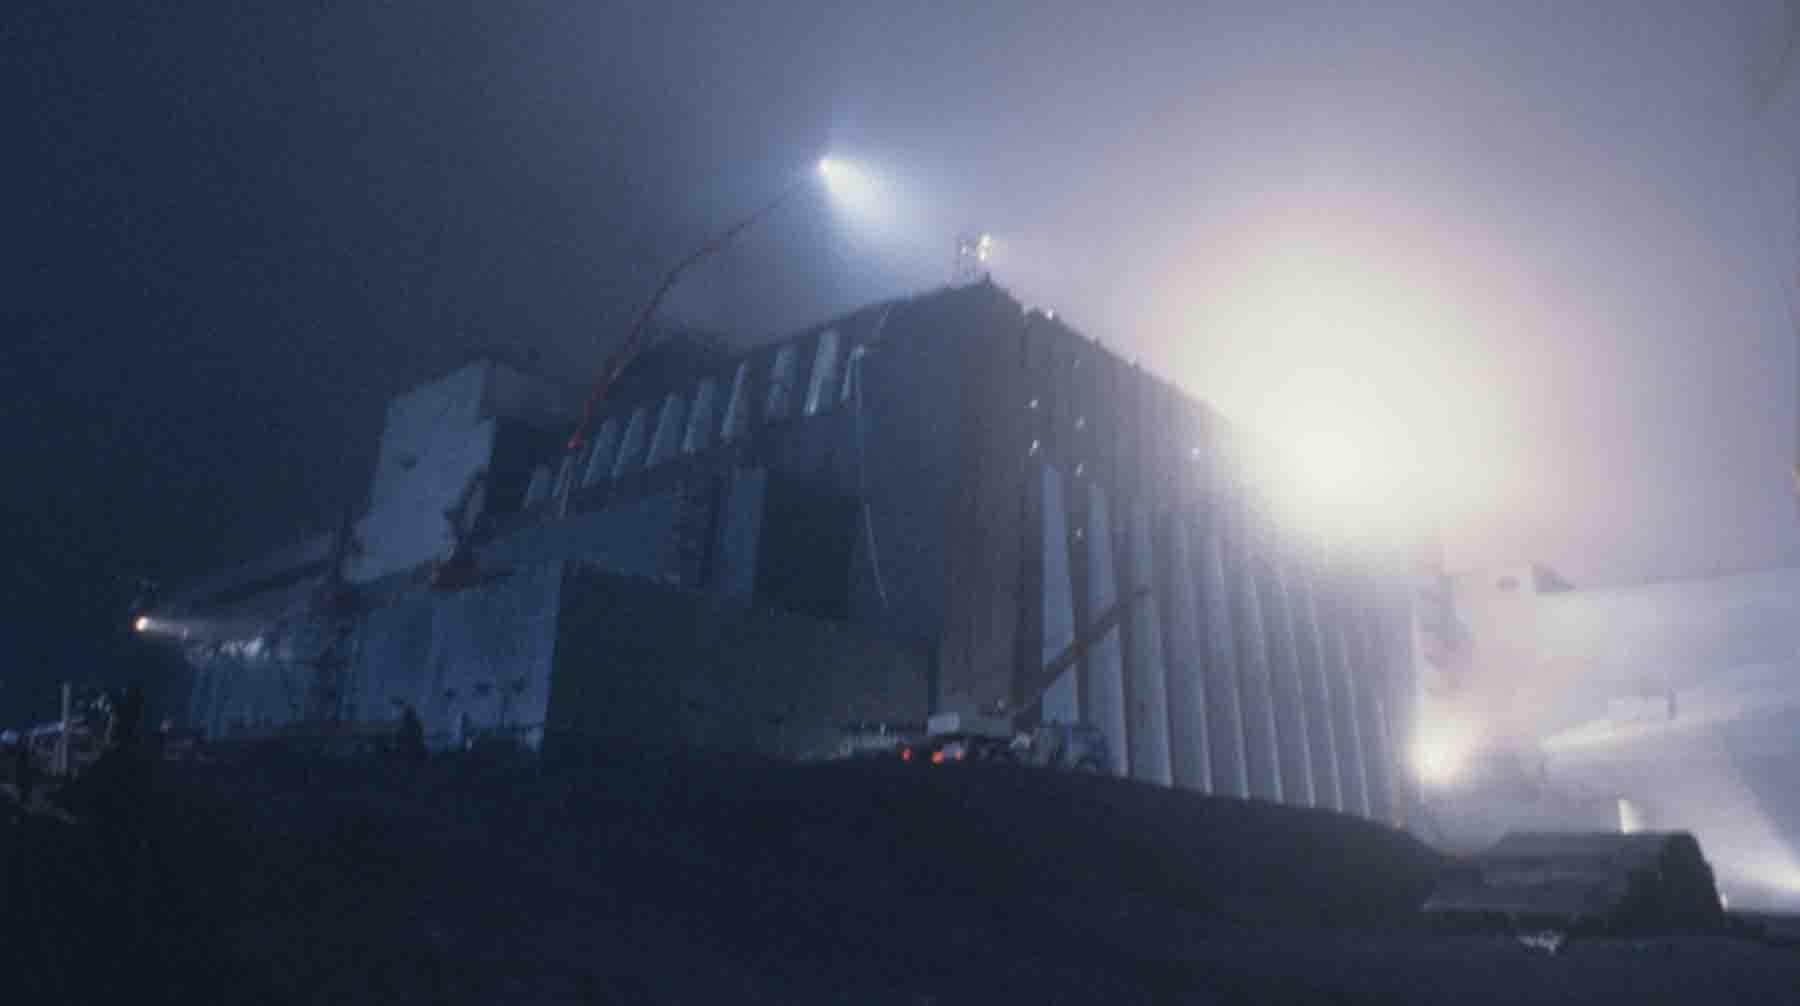 Украинская ССР. Чернобыльская атомная электростанция. Изоляционное сооружение (саркофаг) над четвёртым энергоблоком ЧАЭС, построенное к ноябрю 1986 года после взрыва 4-го реактора 26 апреля.